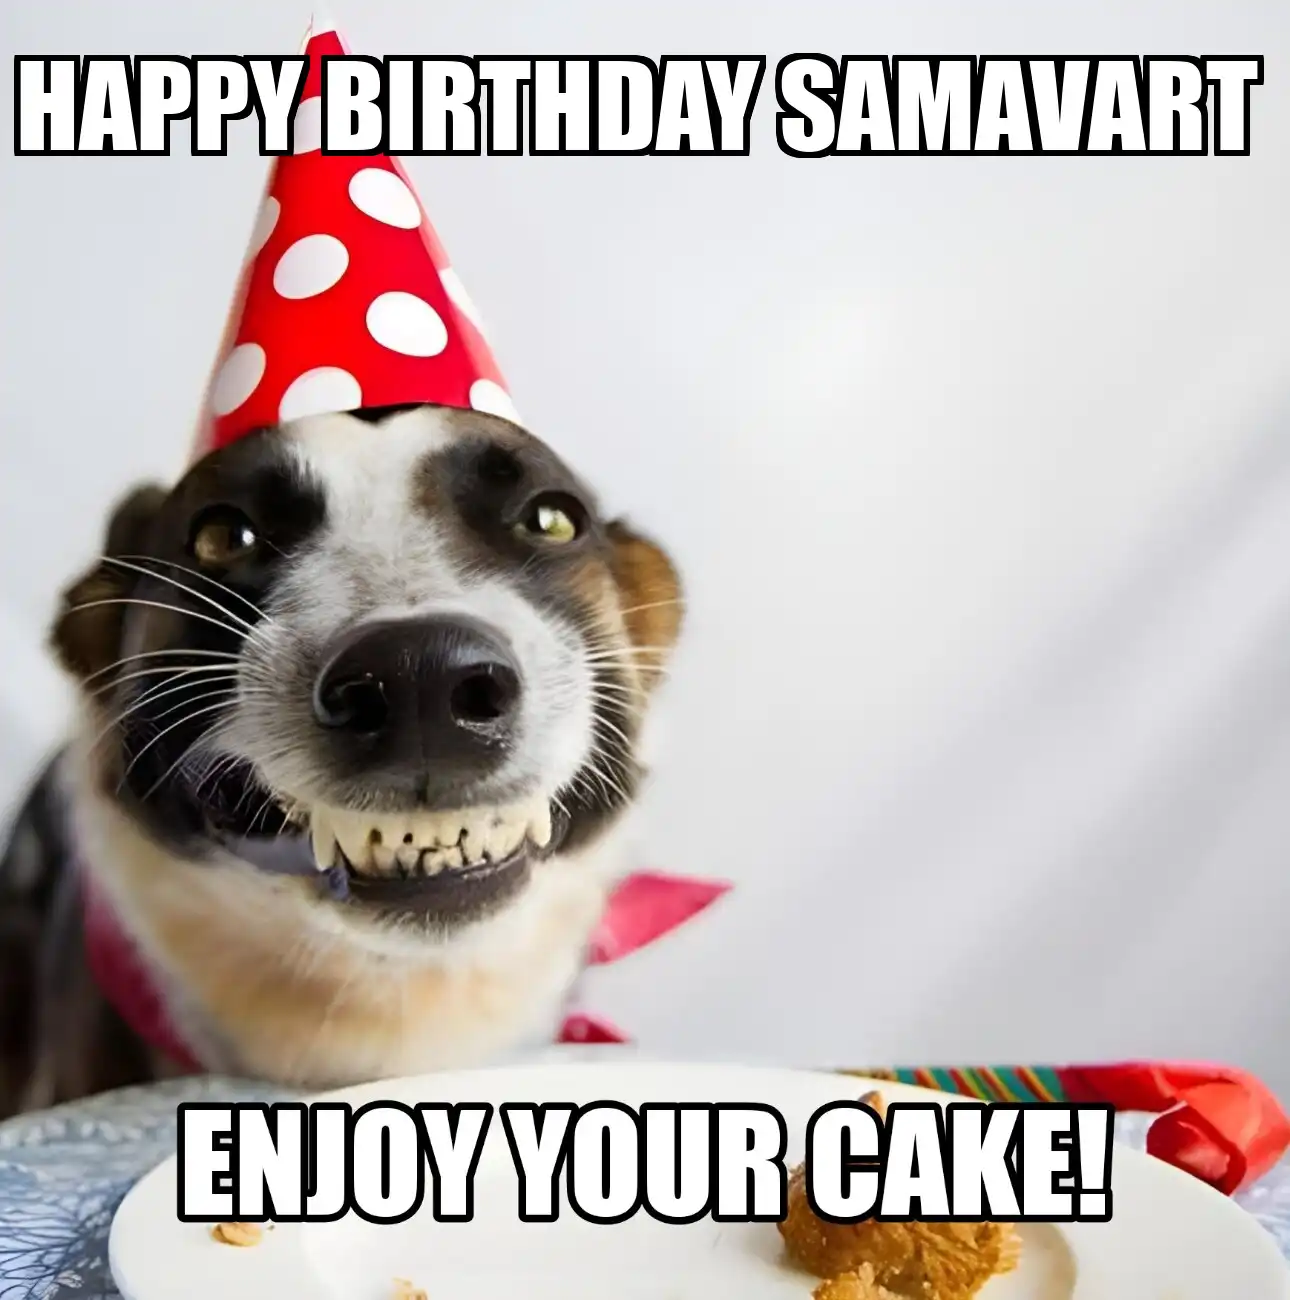 Happy Birthday Samavart Enjoy Your Cake Dog Meme